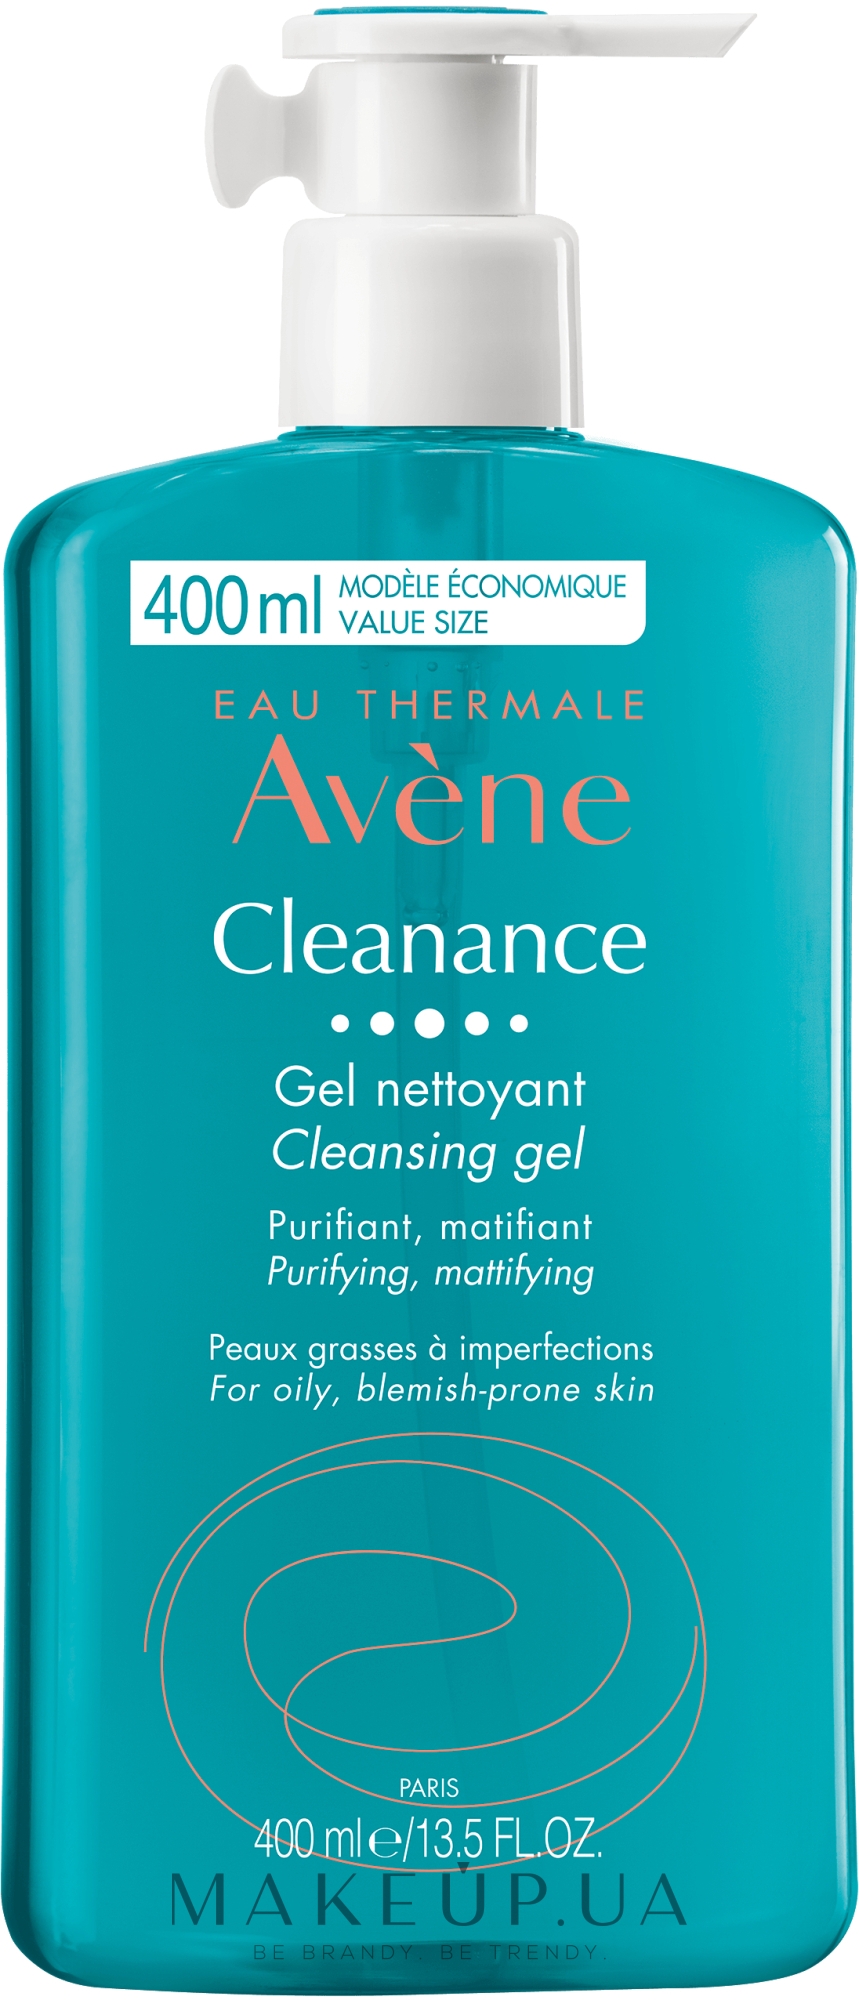 Avene Cleanance Women Corrigerend Serum - Корректирующая сыворотка для  лица: купить по лучшей цене в Украине